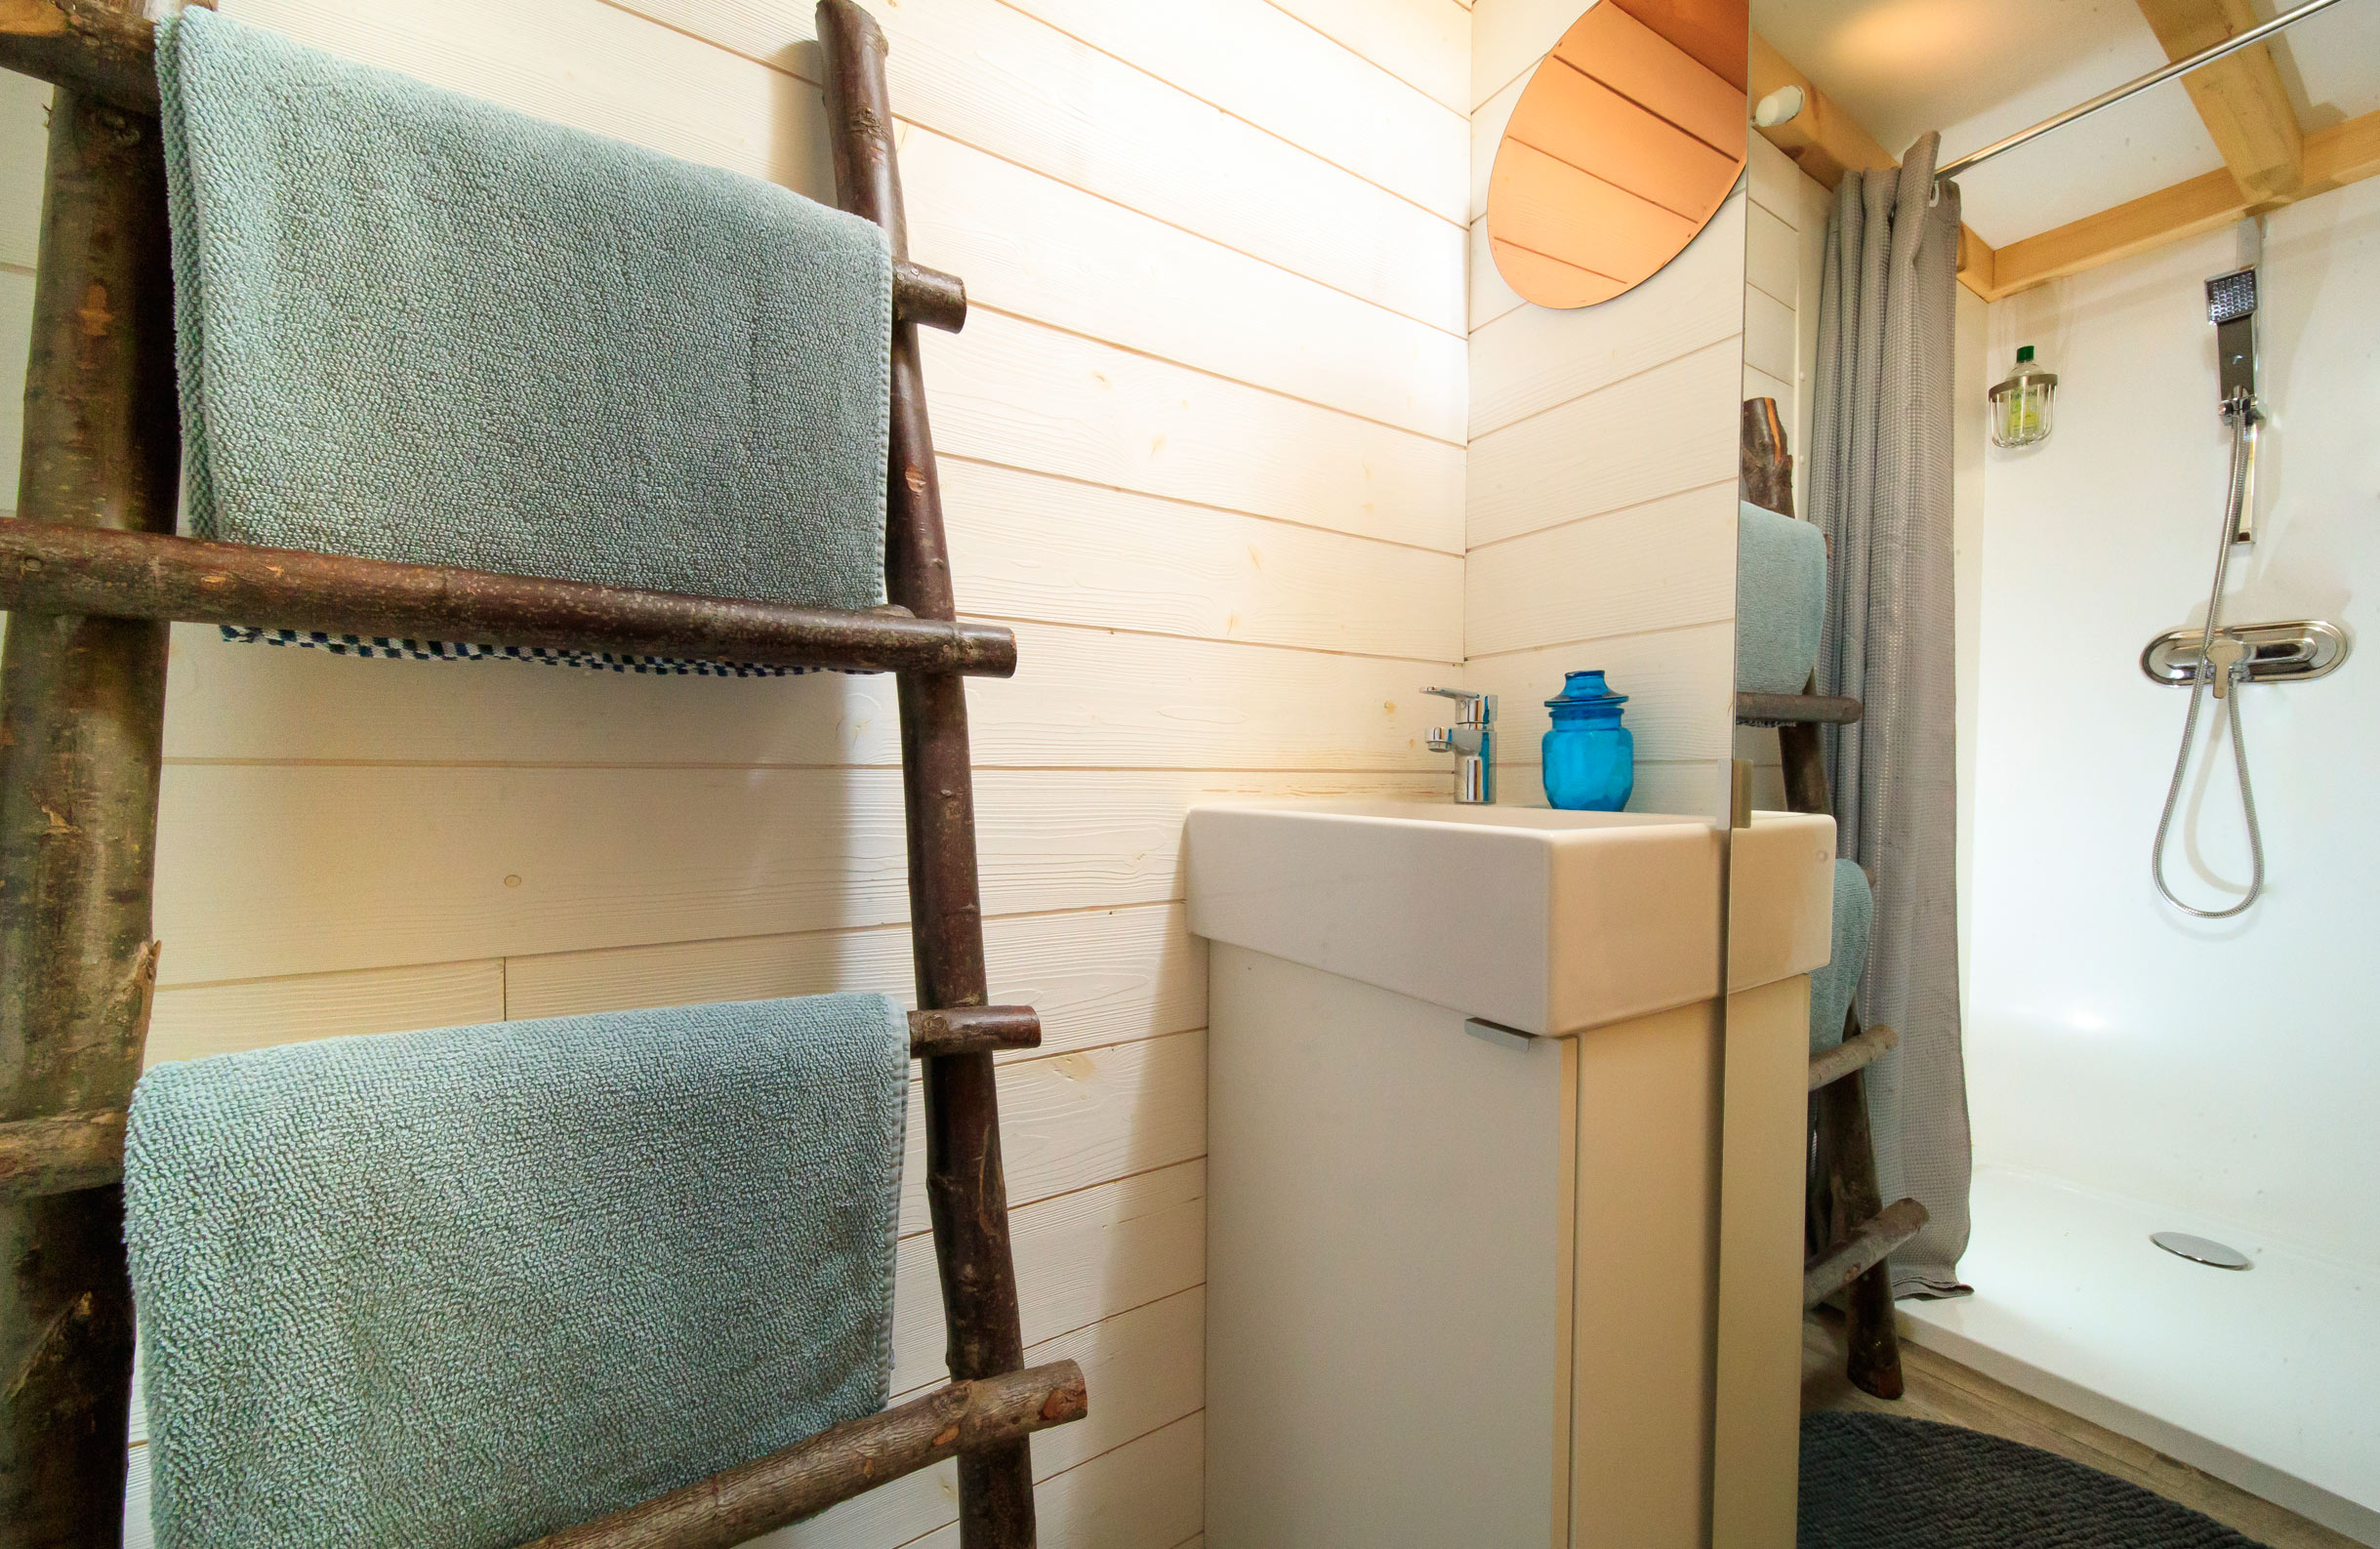 Salle de douche dans la Tinyhouse d'Ailly-sur-Noye 